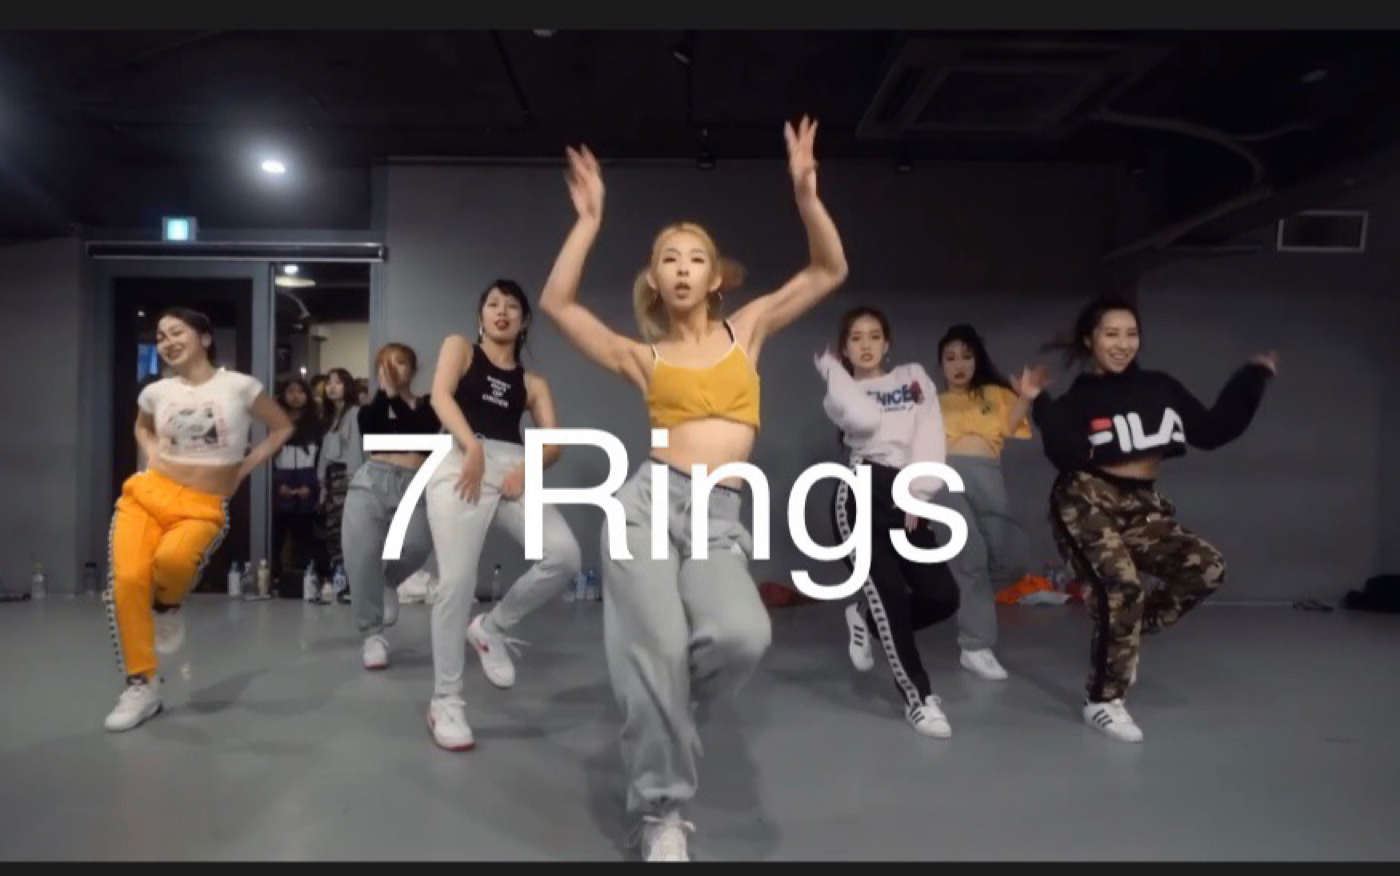 [ 1M ] Mina Myoung神仙编舞！目前为止最爱7 Rings编舞版本！ 封面有点丑是自己用iphone临时弄的，见谅！